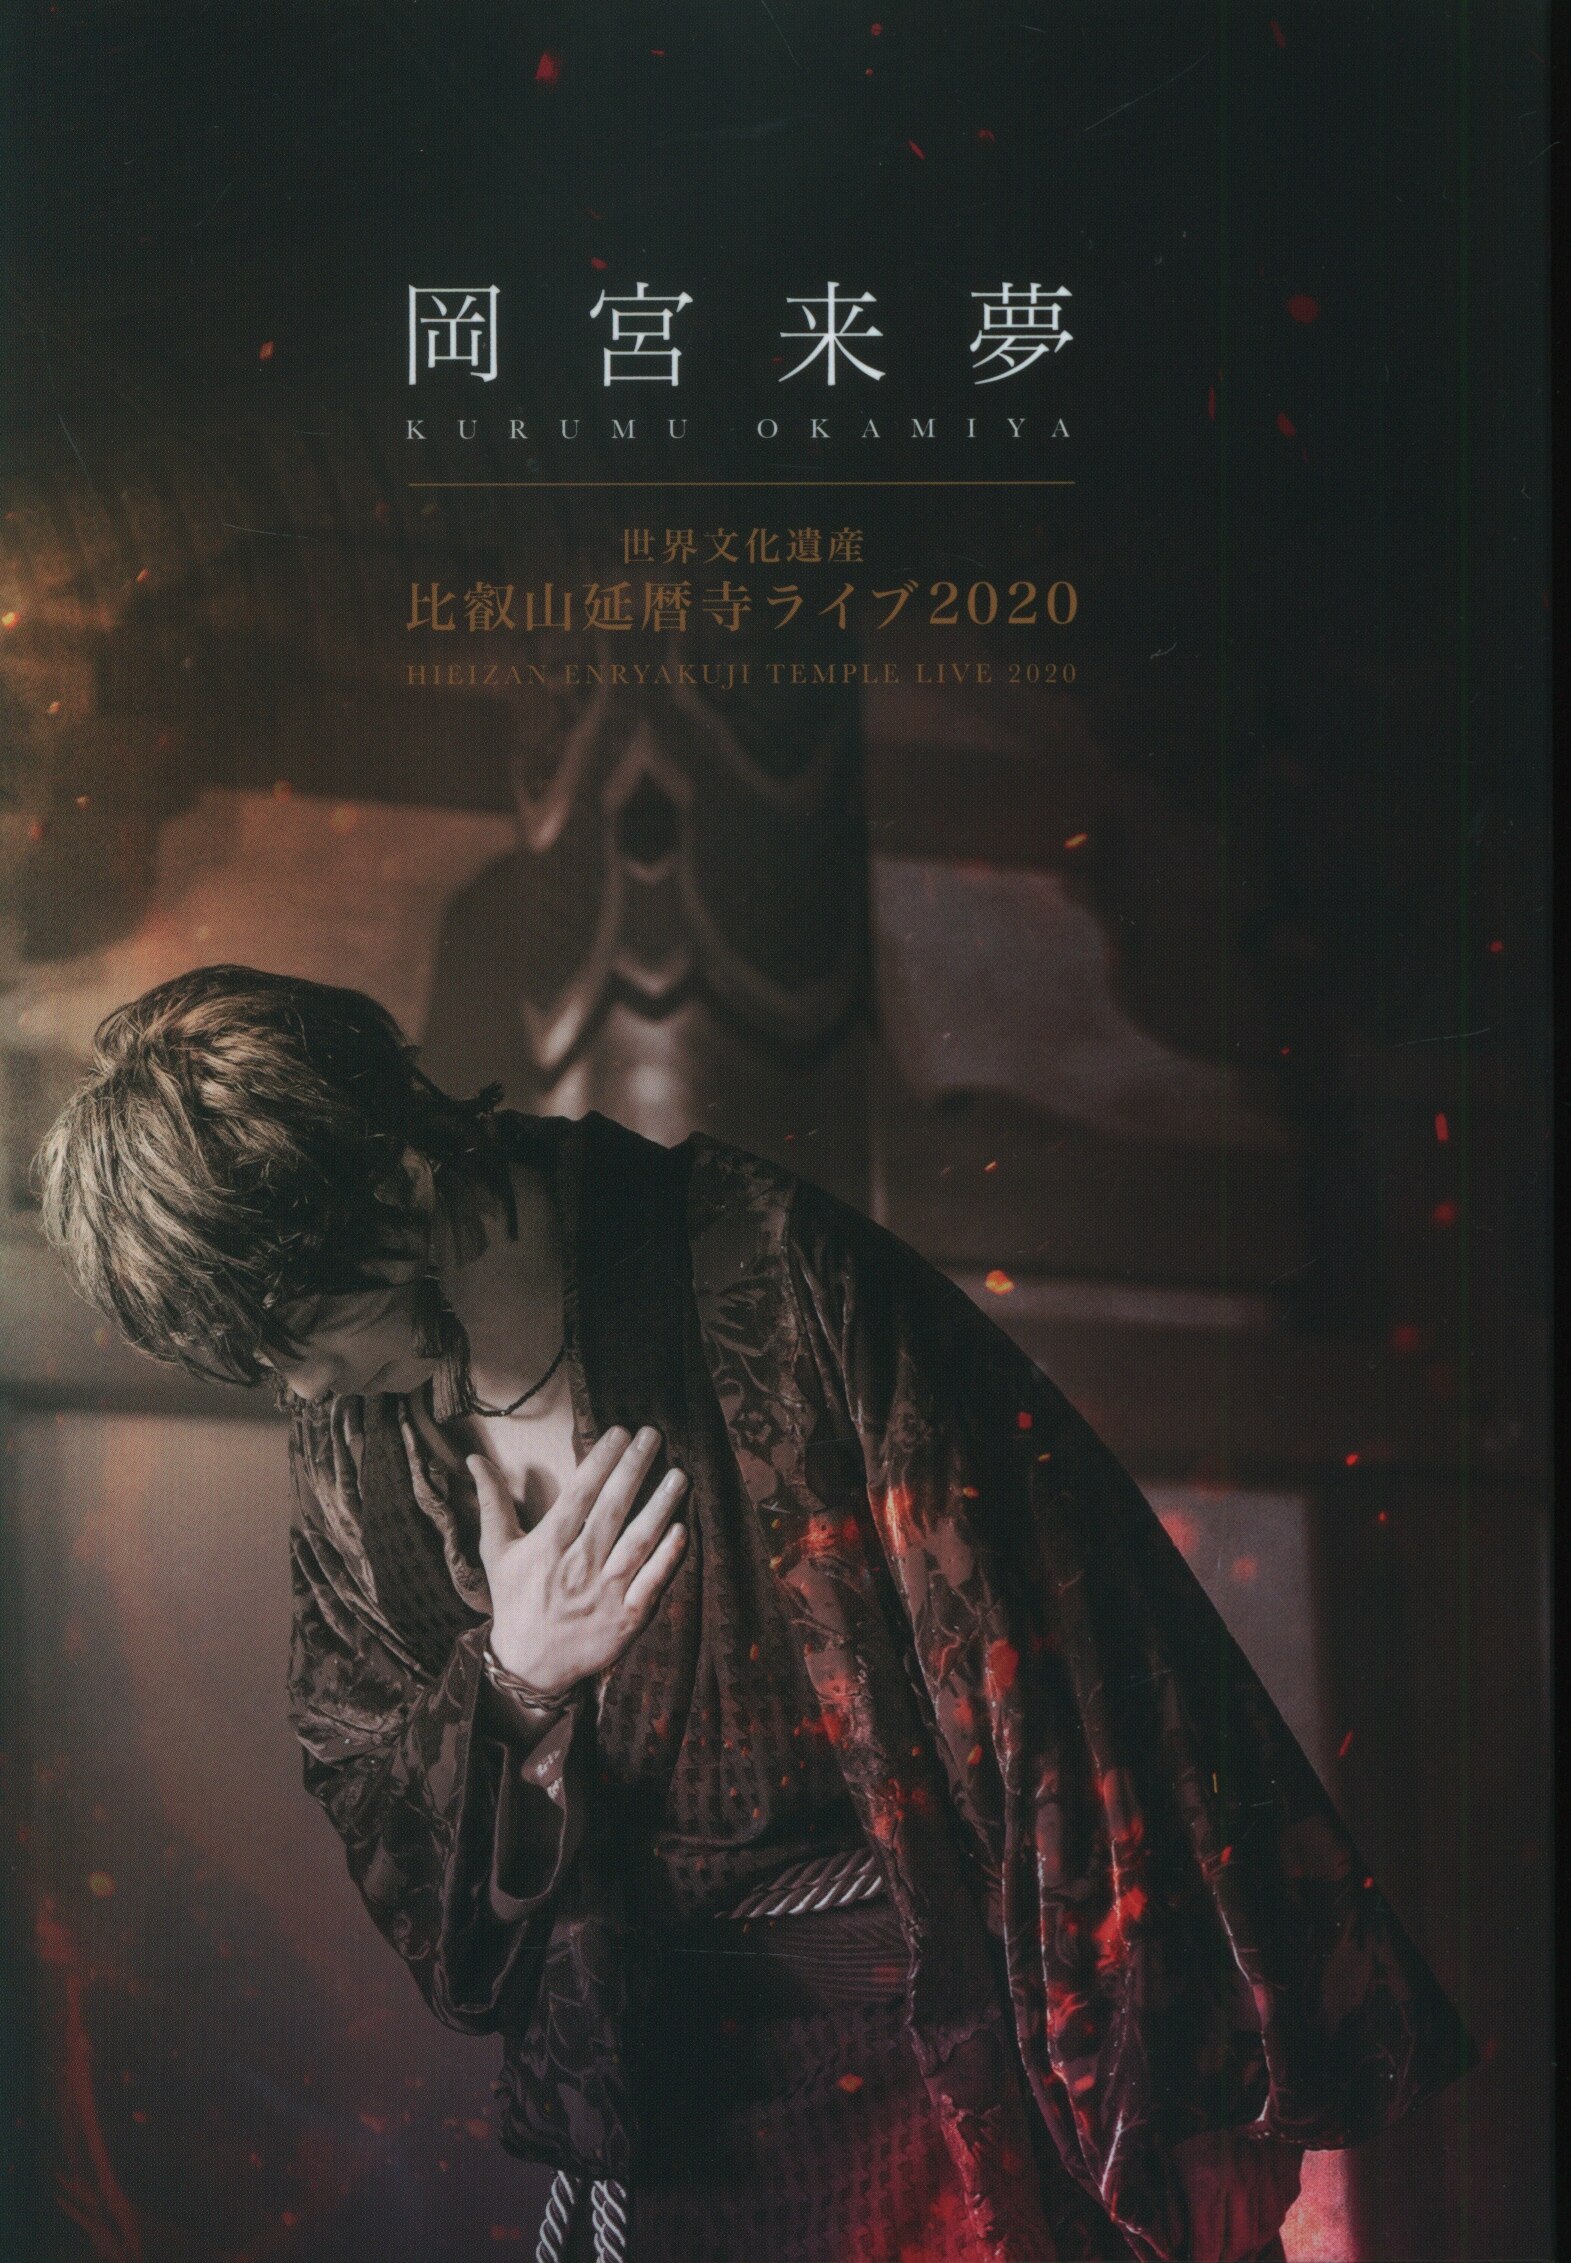 DVD 岡宮来夢 世界文化遺産 比叡山延暦寺ライブ2020 初回盤